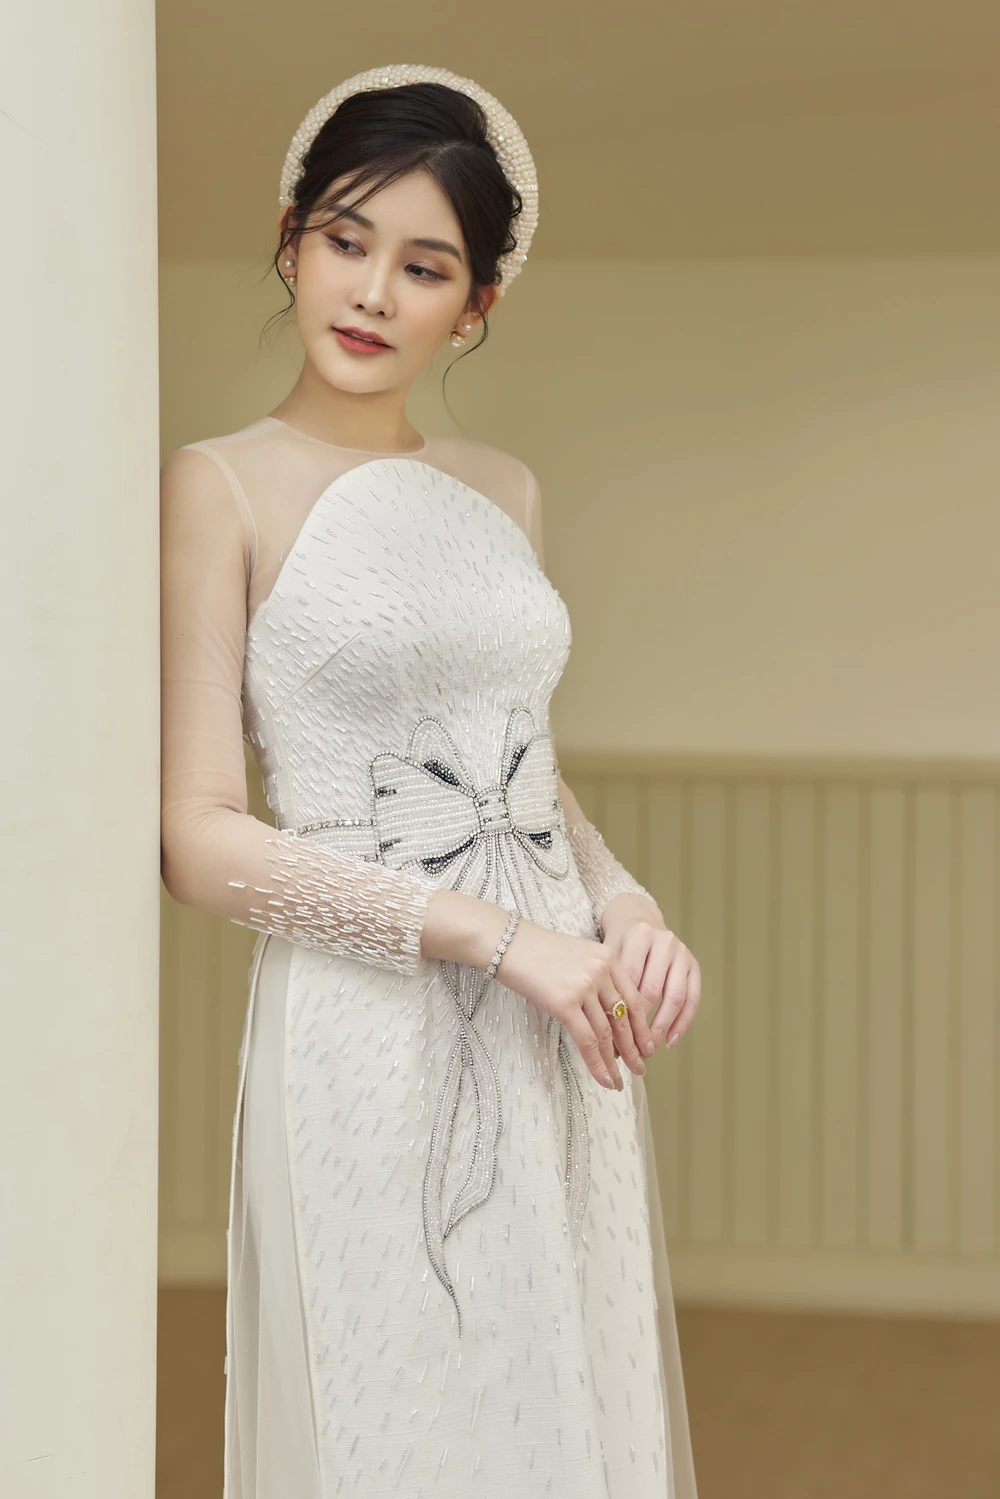 Hoa hậu Lê Âu Ngân Anh khoe sắc vóc tuổi 27 với áo dài của NTK Minh Châu - Ảnh 4.